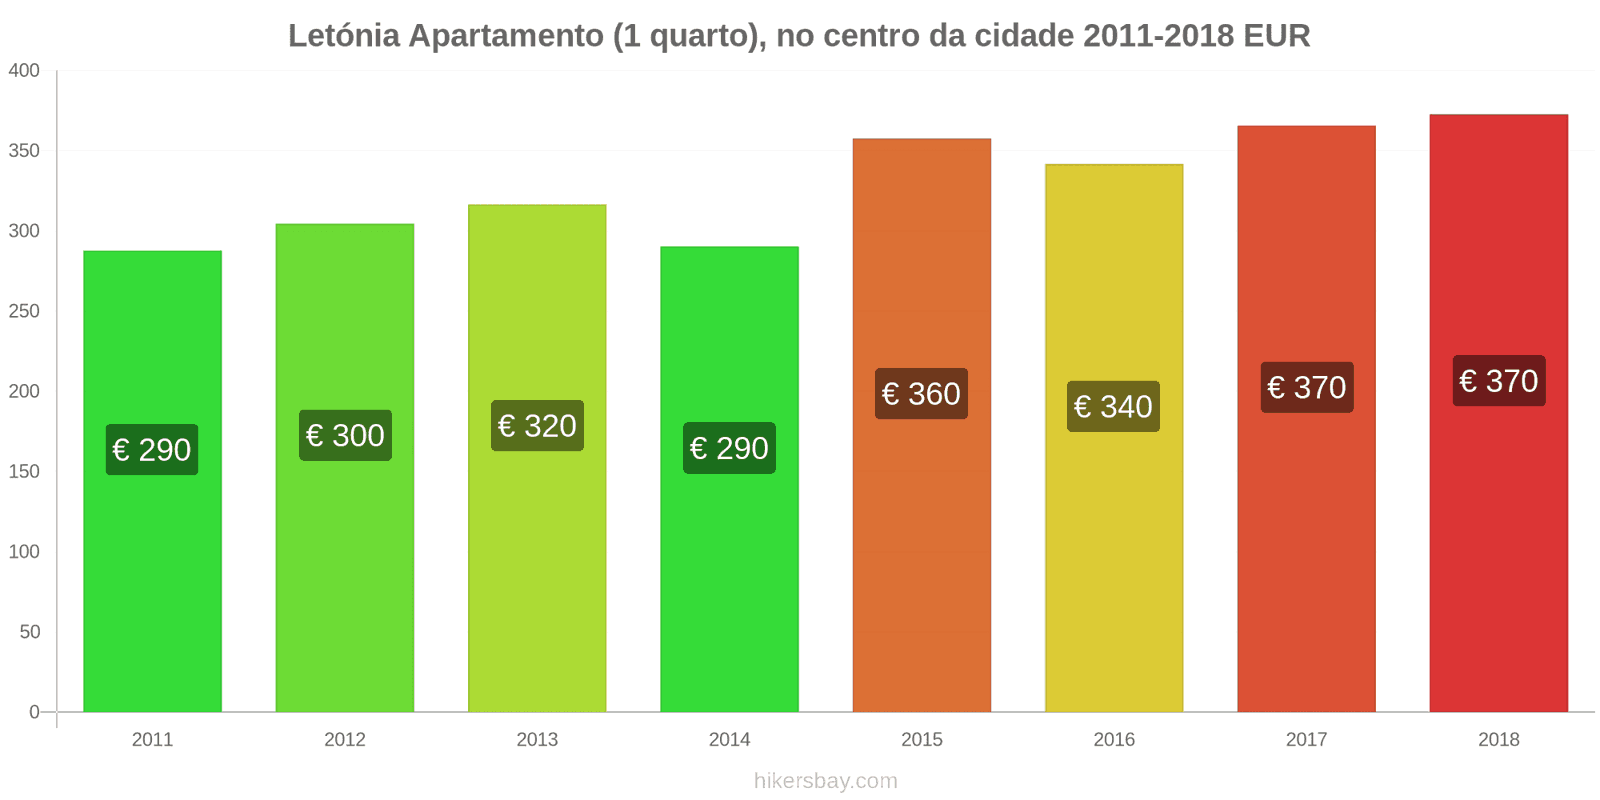 Letónia mudanças de preços Apartamento (1 quarto) no centro da cidade hikersbay.com